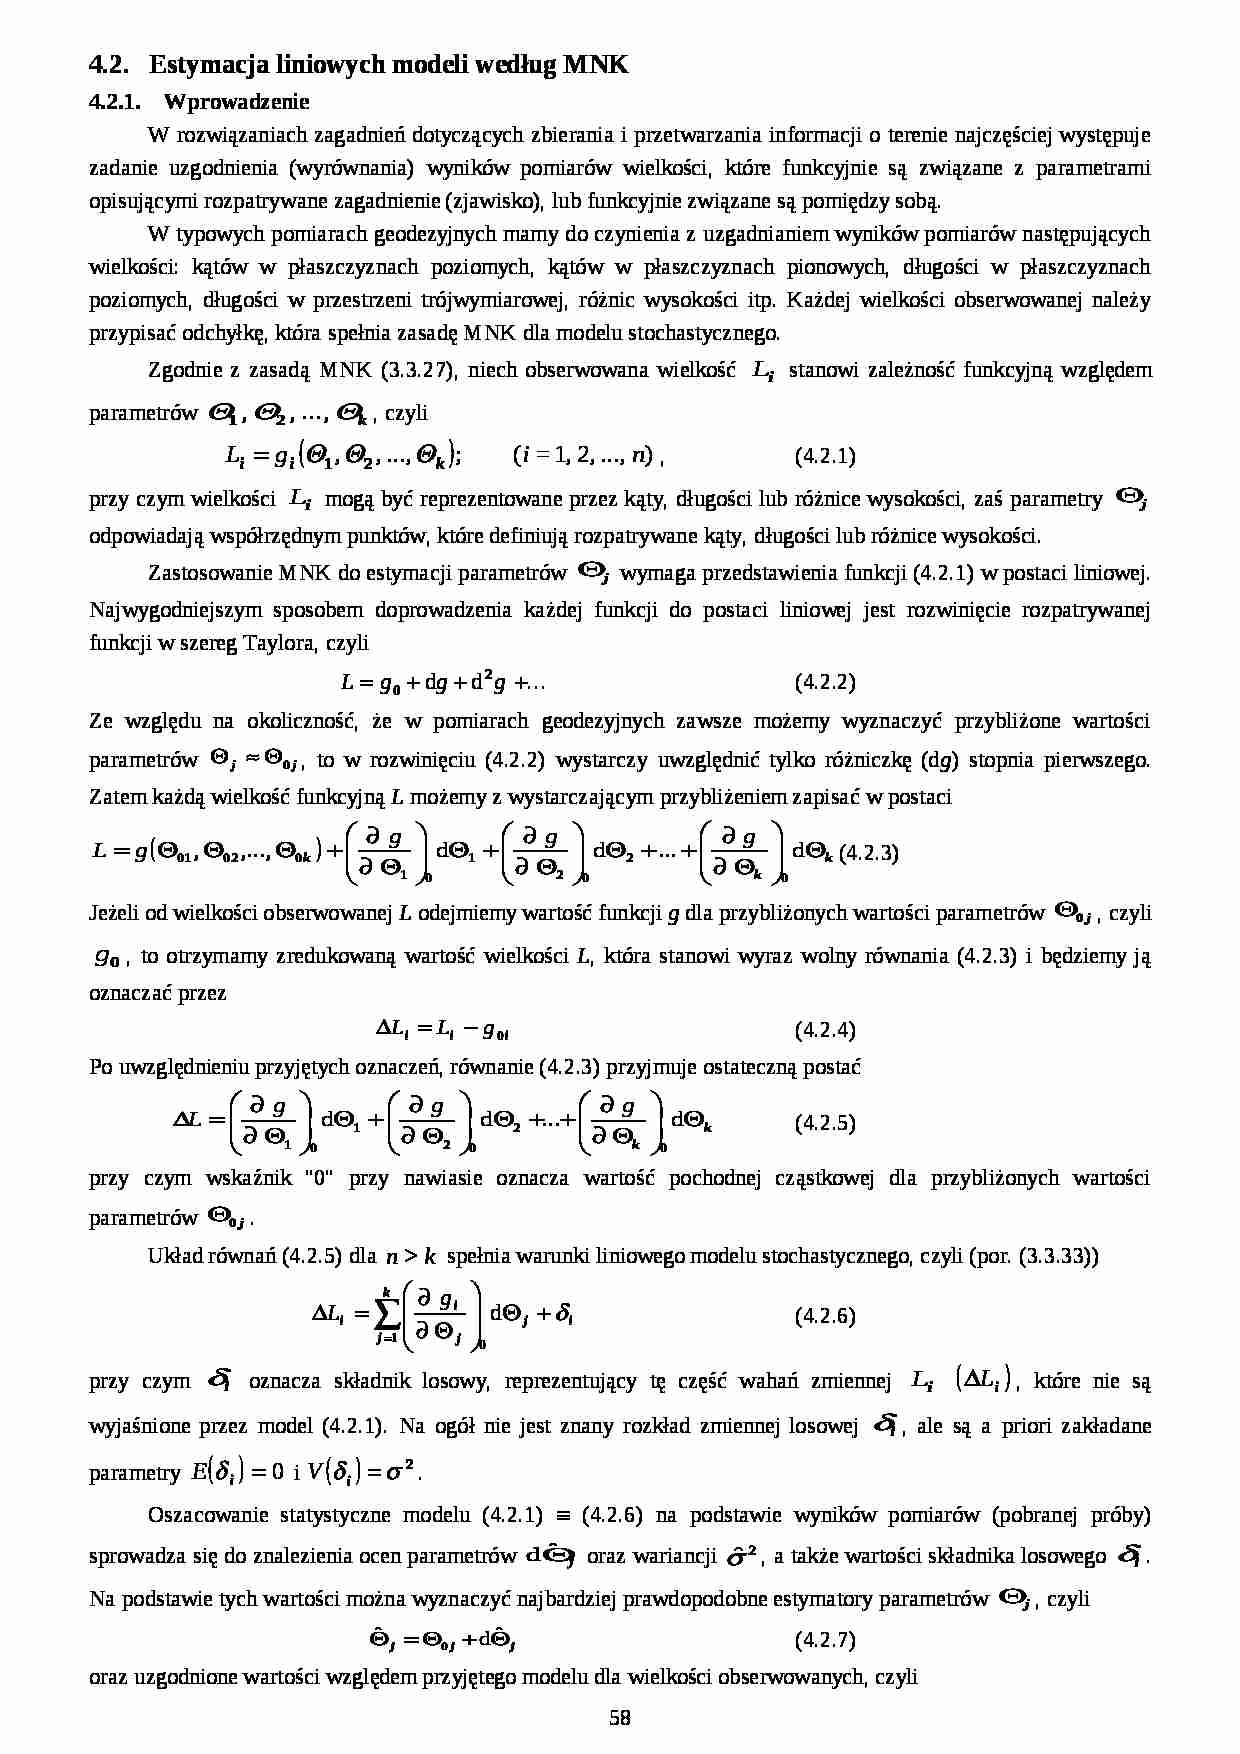 Estymacja liniowych modeli według MNK - strona 1